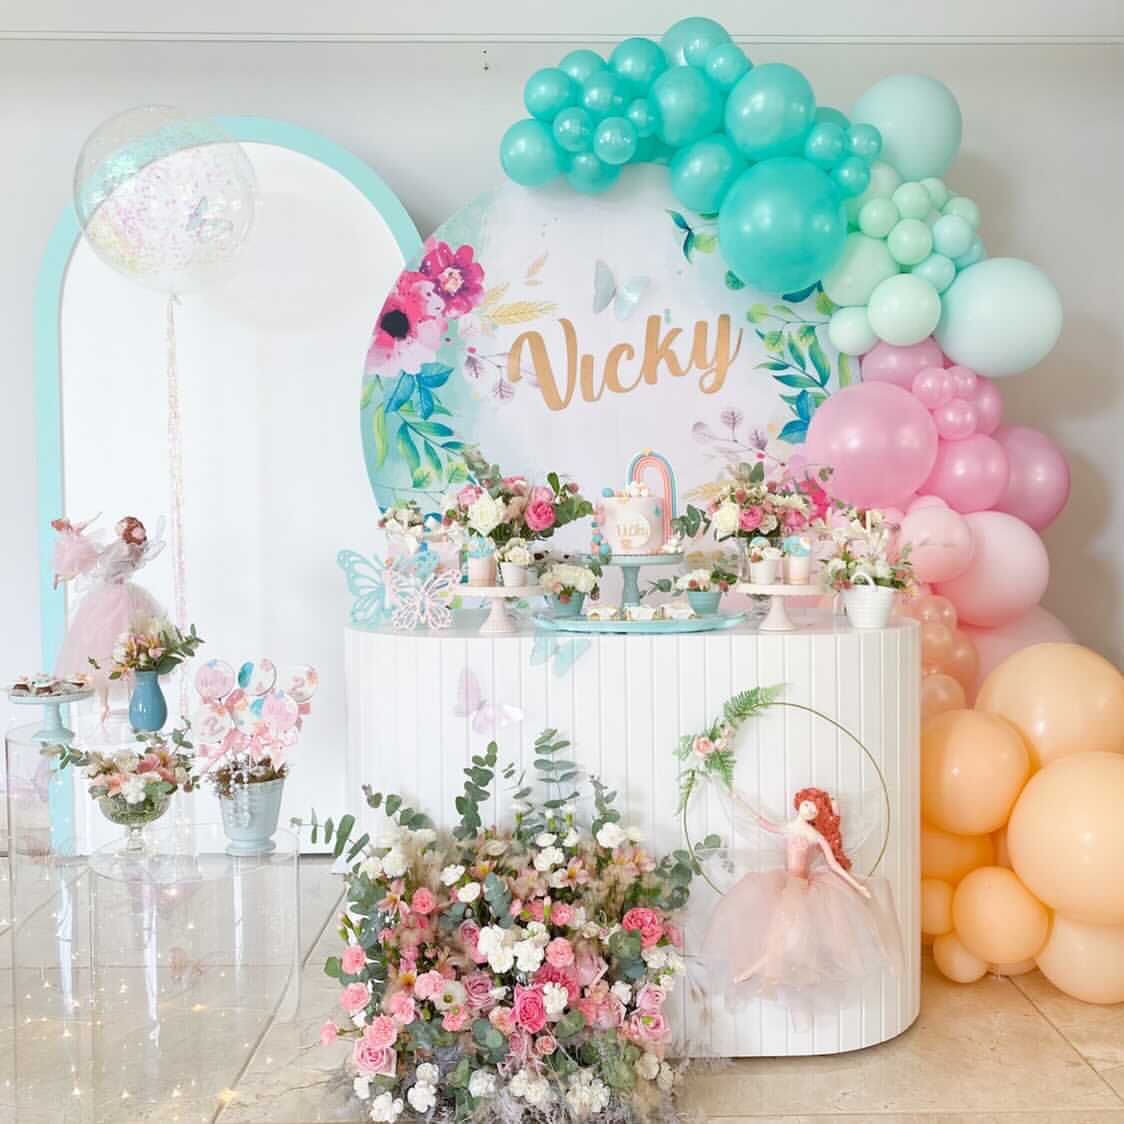 Nana's - Bolos, cupcakes e afins: Bolo lilás com flores - aniversário 18  anos